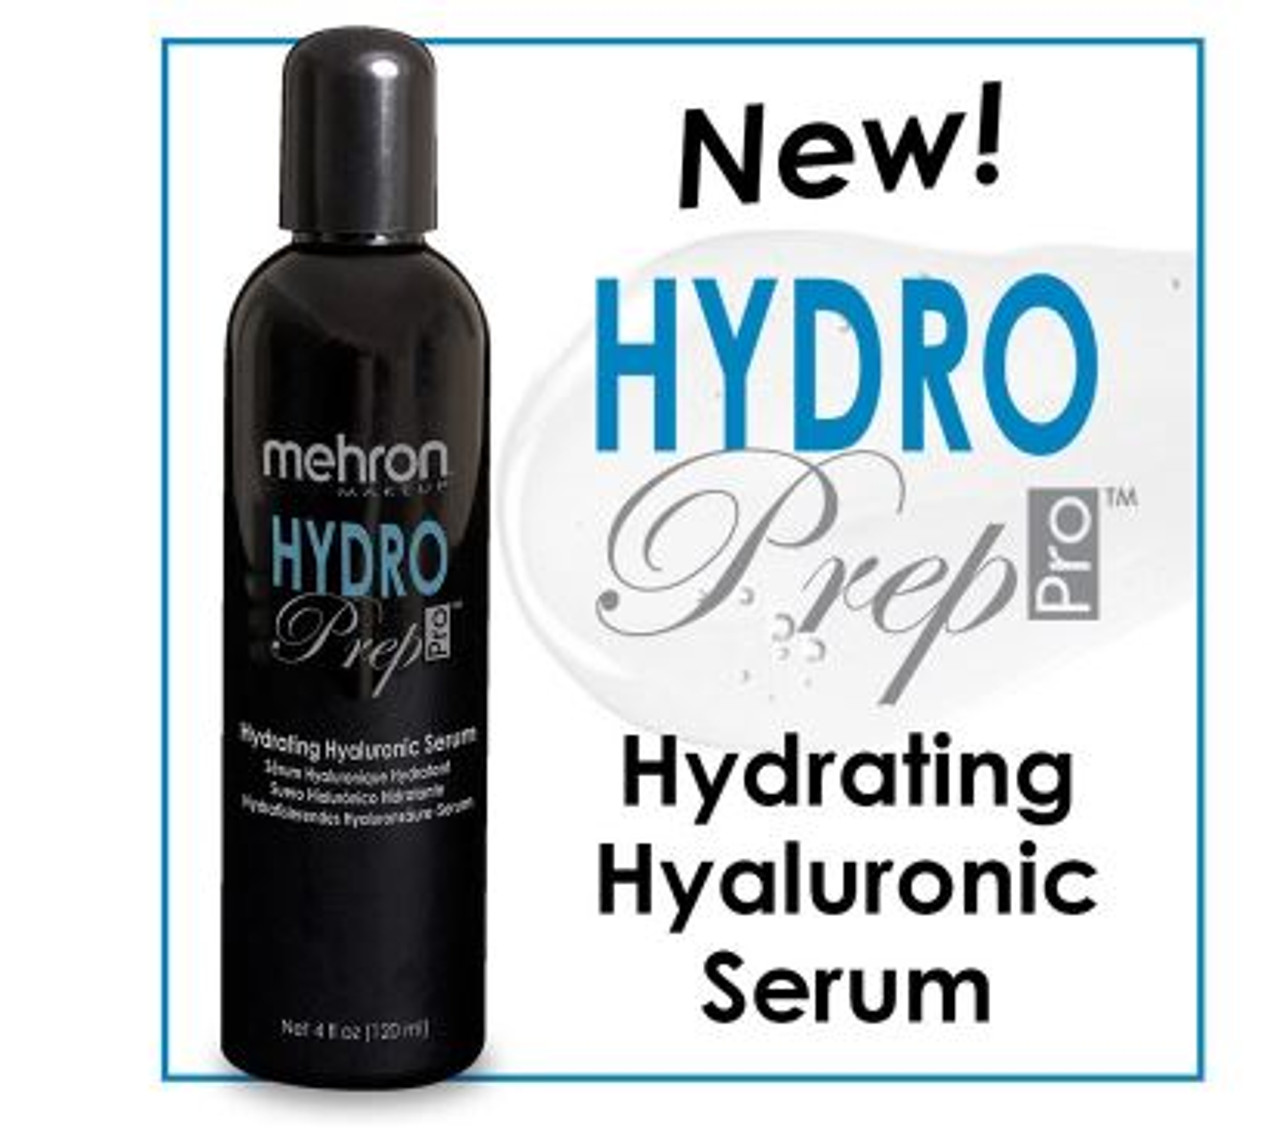 Mehron Hydro Prep Pro (4 oz) –